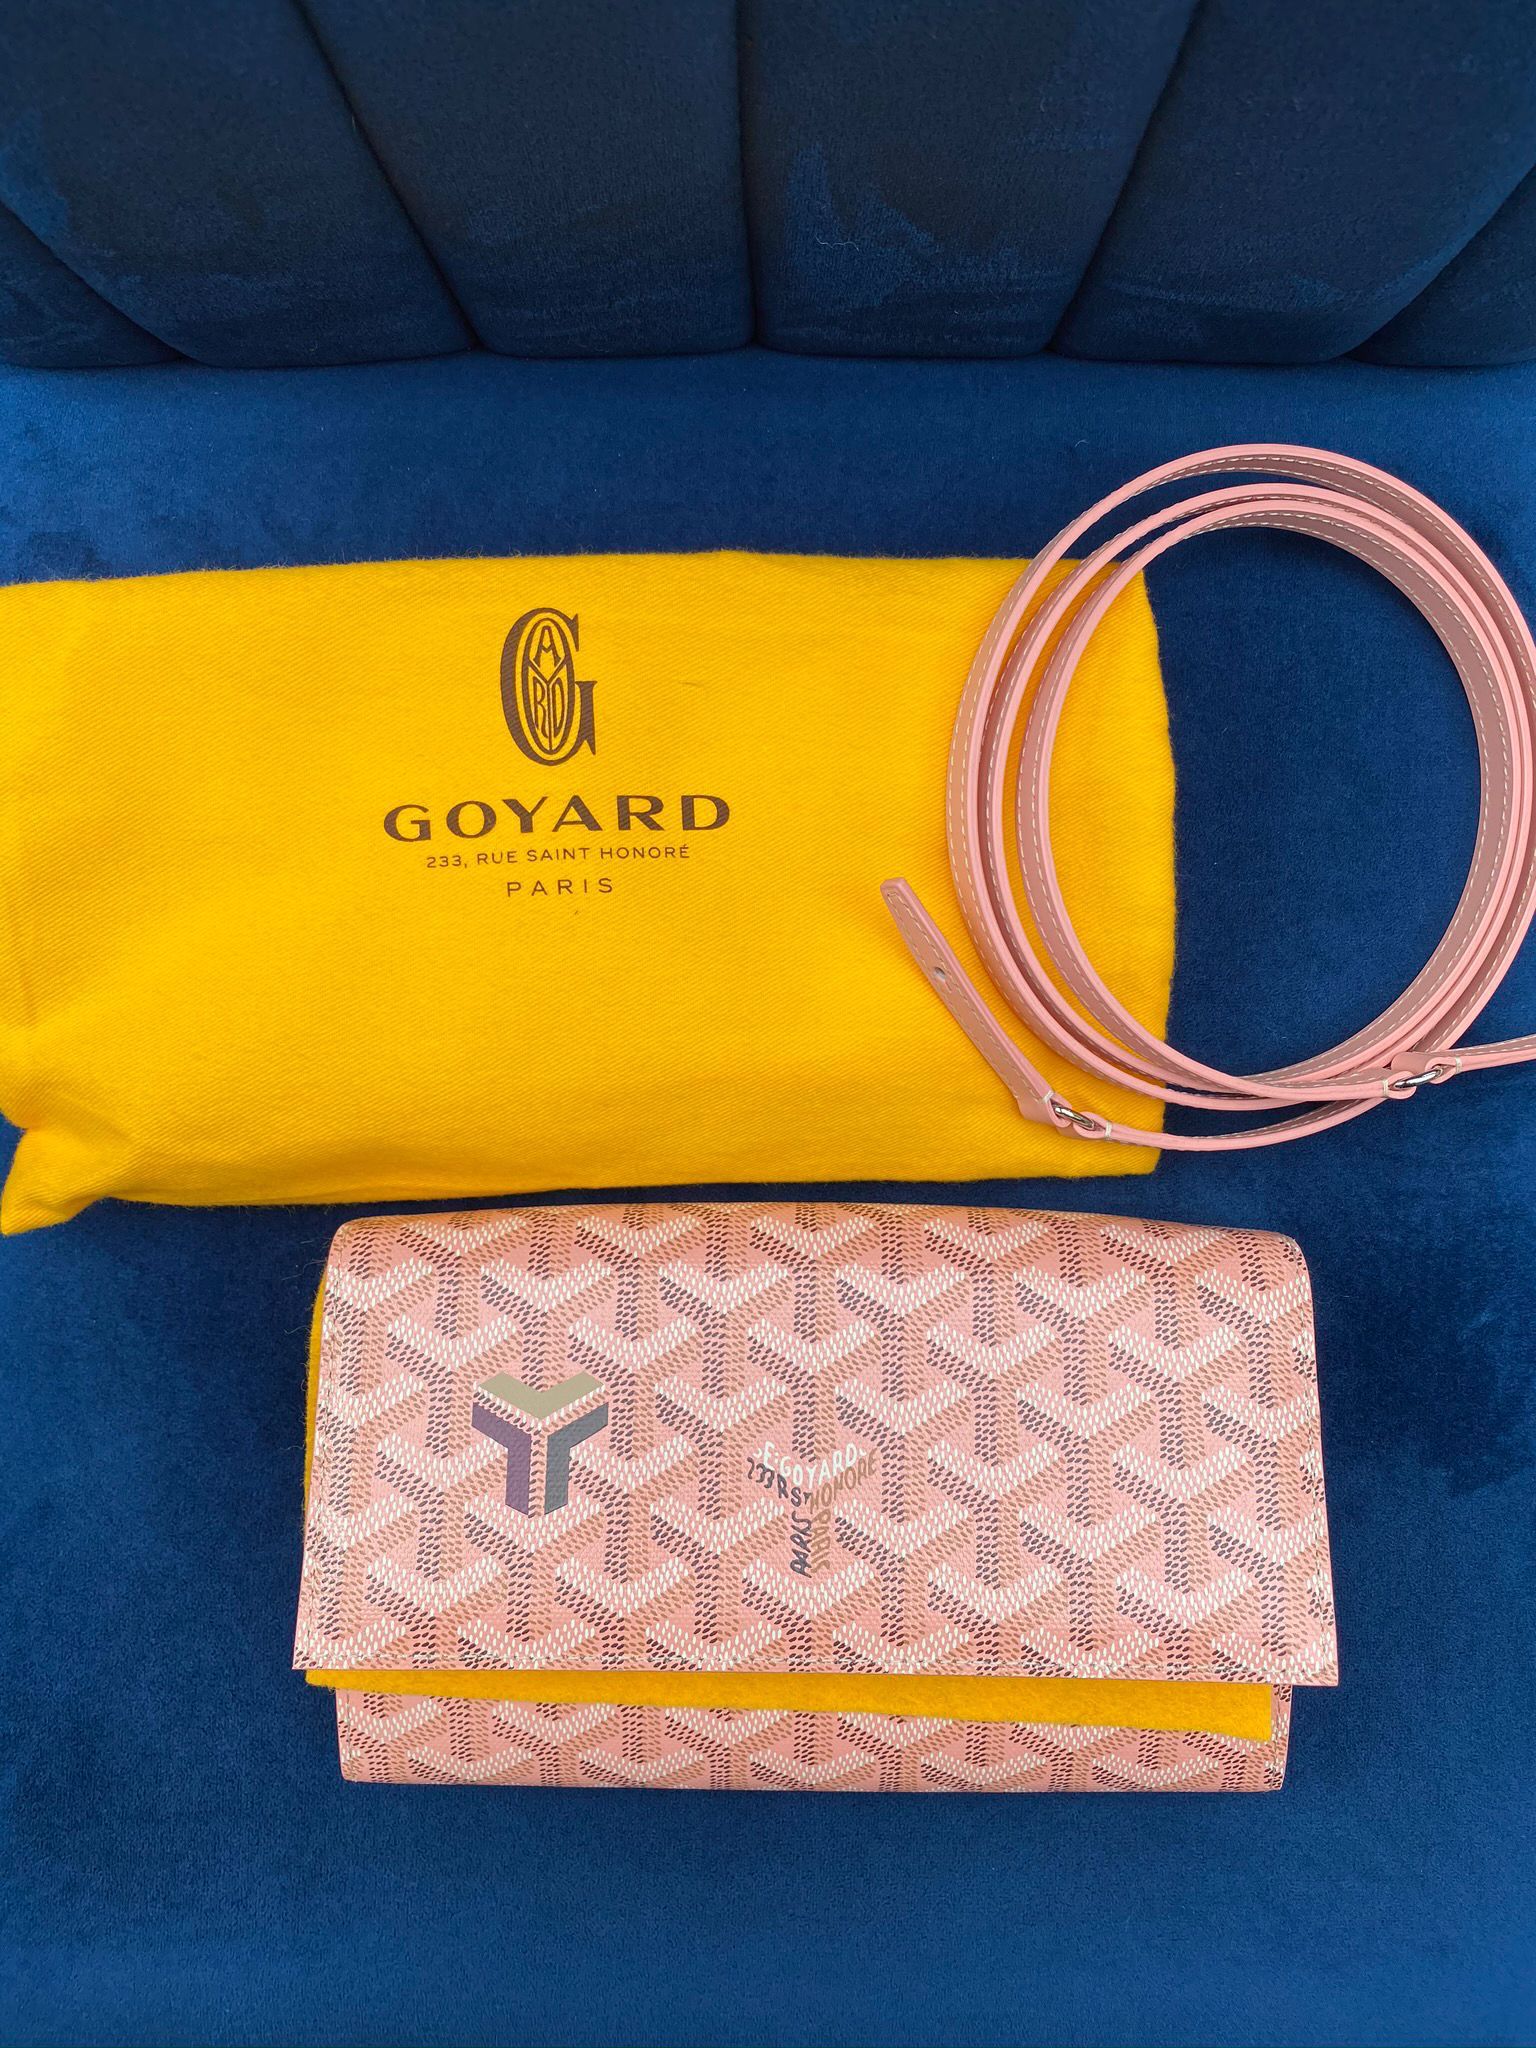 Goyard Varenne Continental Wallet Pink (Limited Edition)